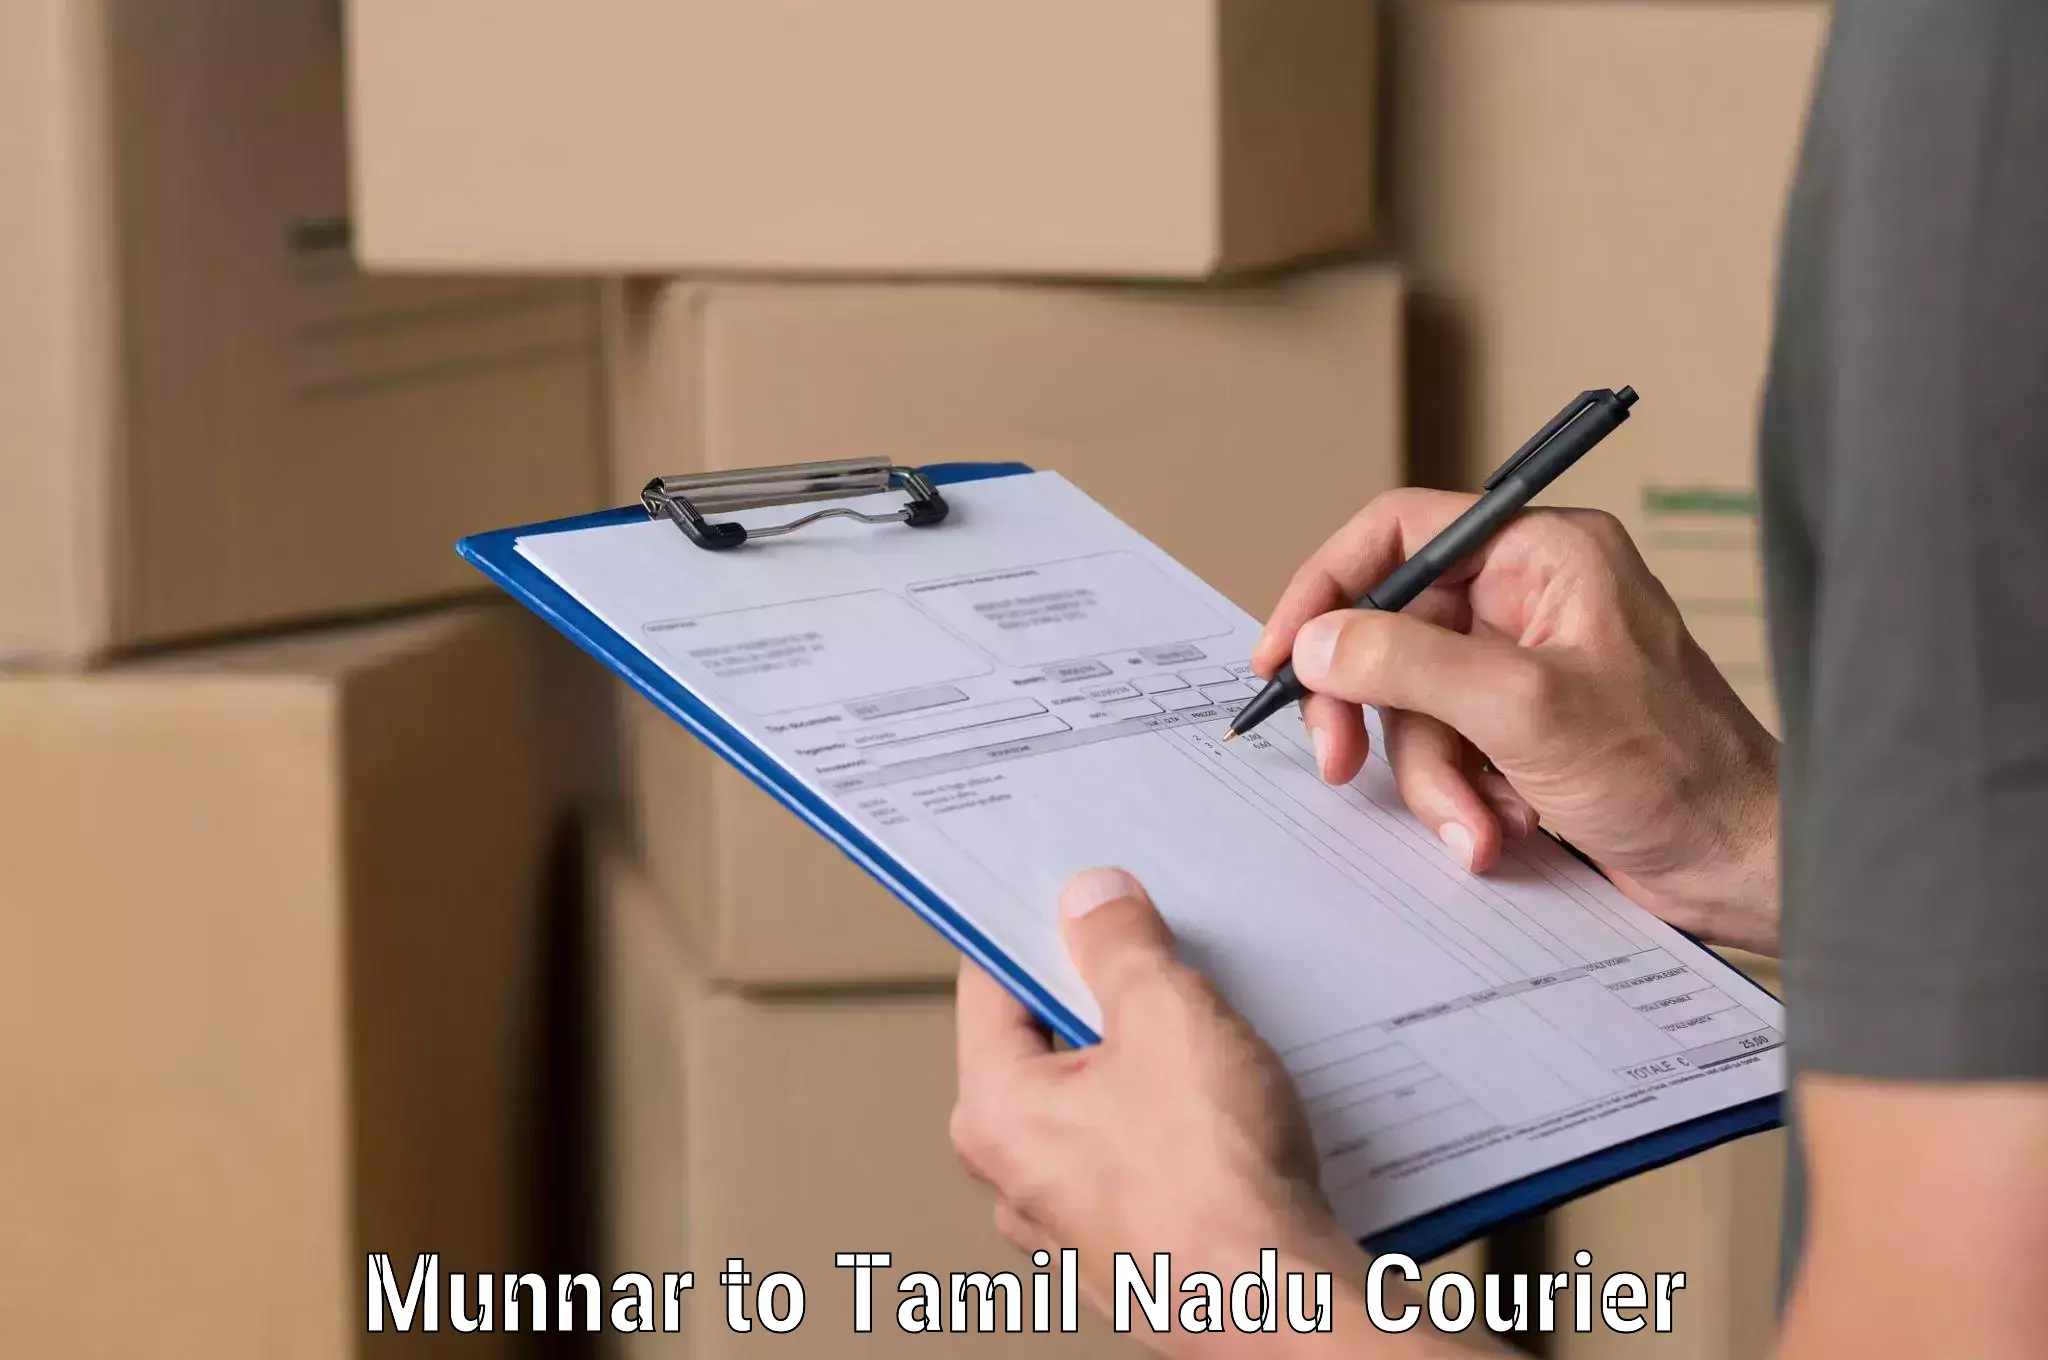 Bulk order courier Munnar to IIIT Tiruchirappalli